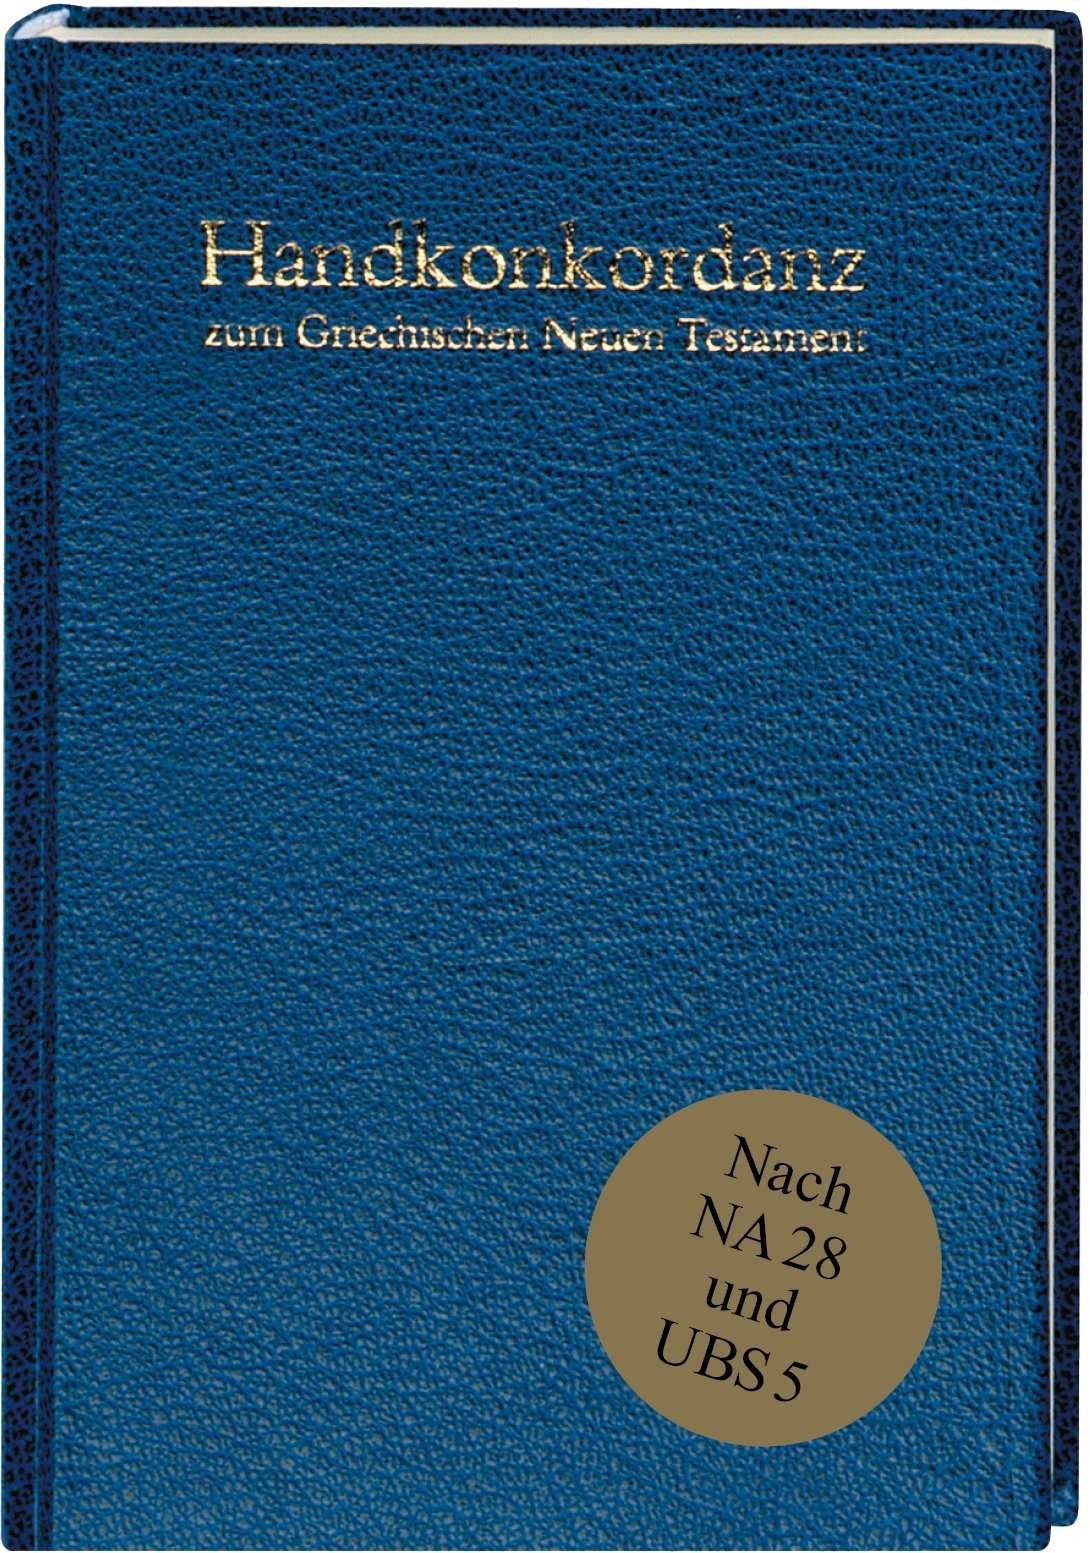 Handkonkordanz zum griechischen Neuen Testament - Cover